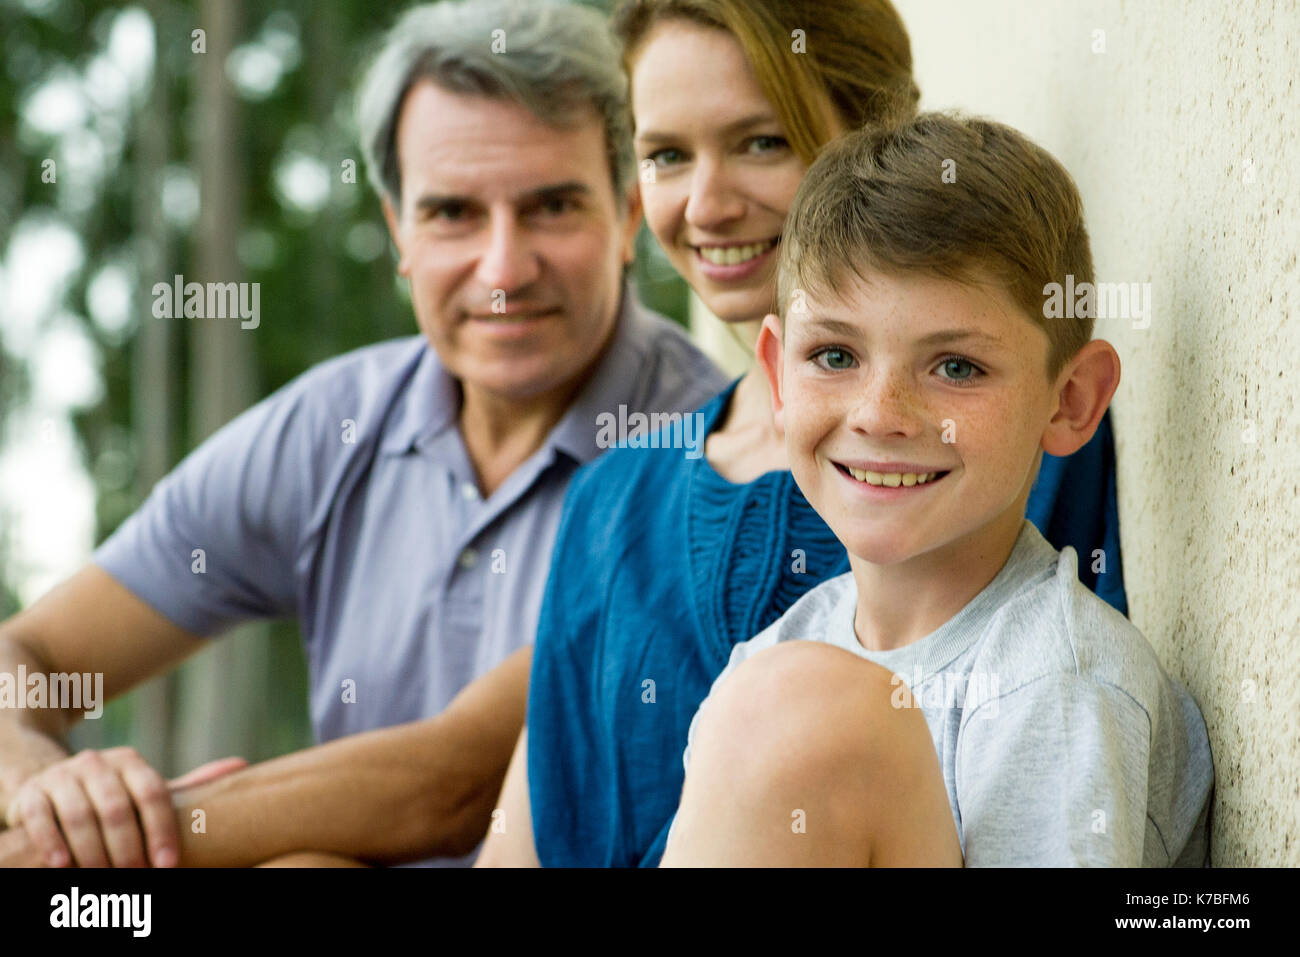 Boy with parents, portrait Stock Photo